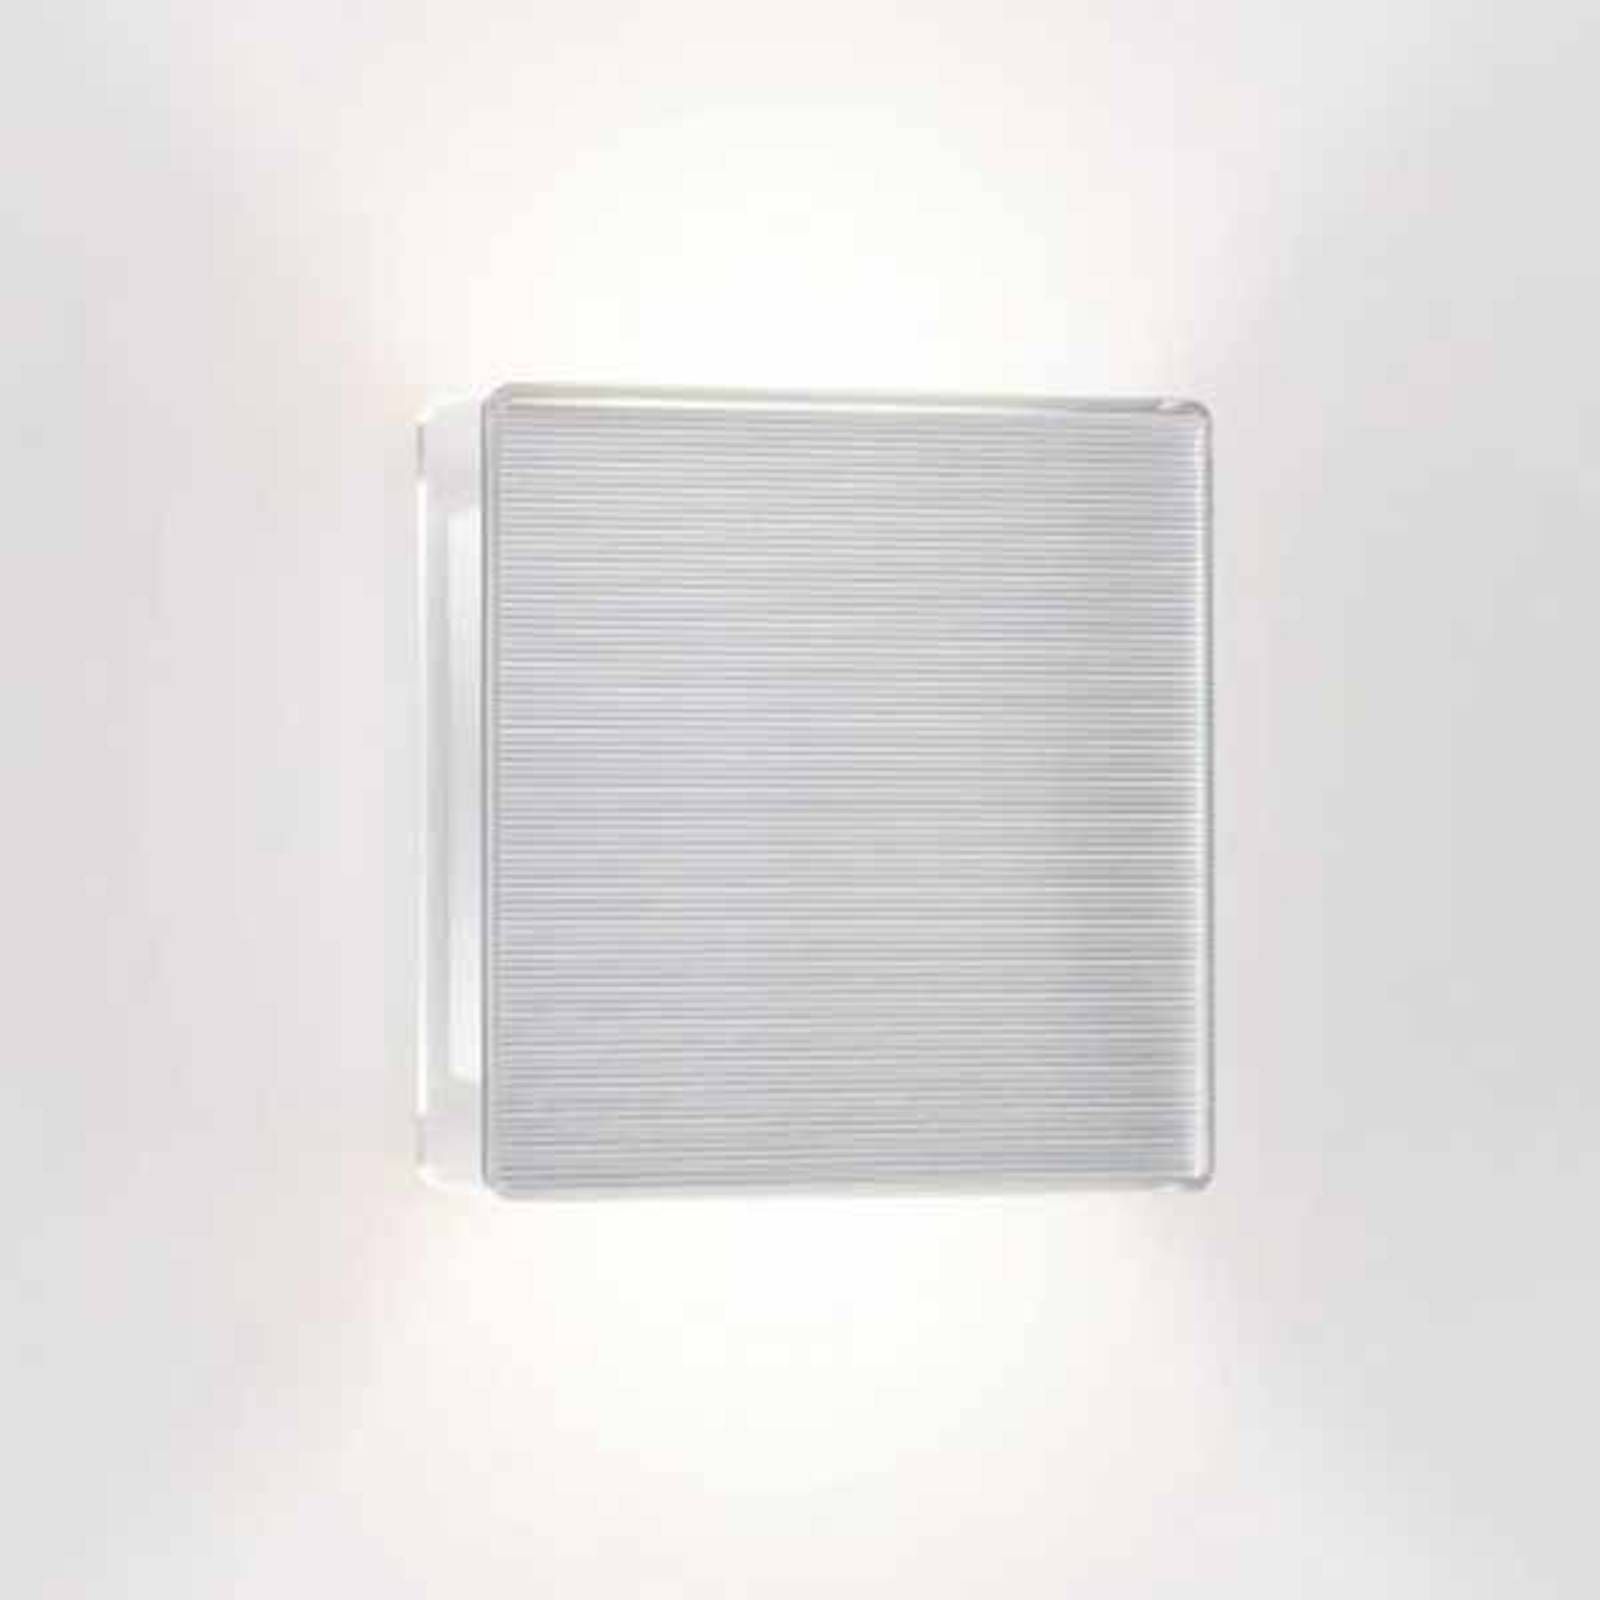 Serien Lighting serien.lighting App nástenné LED svetlo rebrované, Obývacia izba / jedáleň, hliník, polykarbonát, plexisklo, 15W, L: 17 cm, K: 17cm